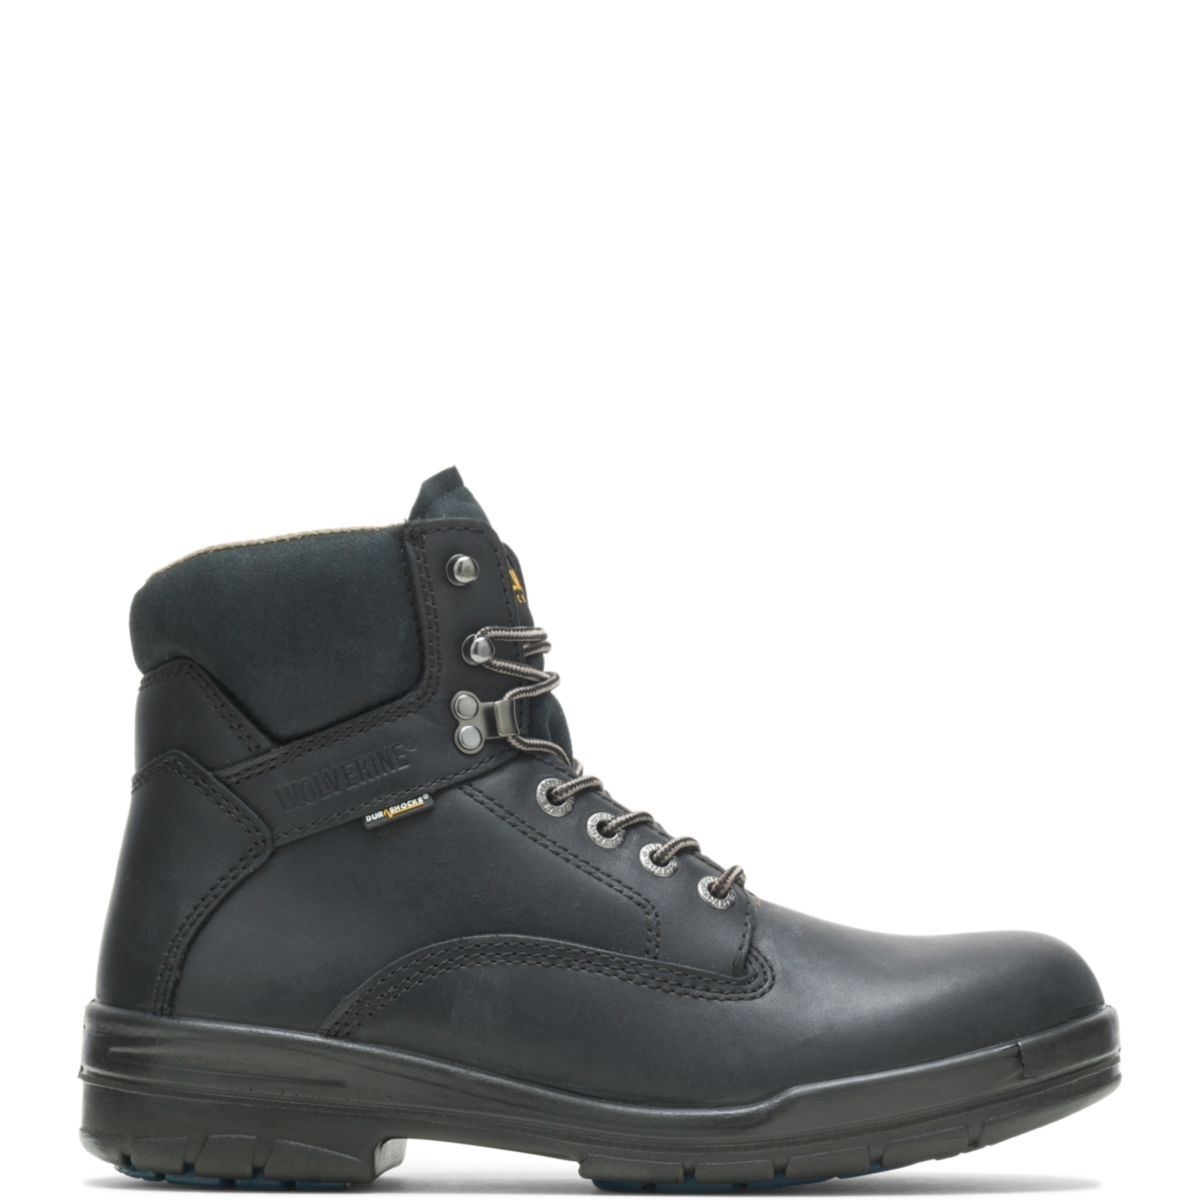 WOLVERINE Men's 6 DuraShocksÂ® Slip Resistant Direct-Attached Lined Soft Toe Work Boot Black - W03123 14 WIDE BLACK - BLACK, 10.5